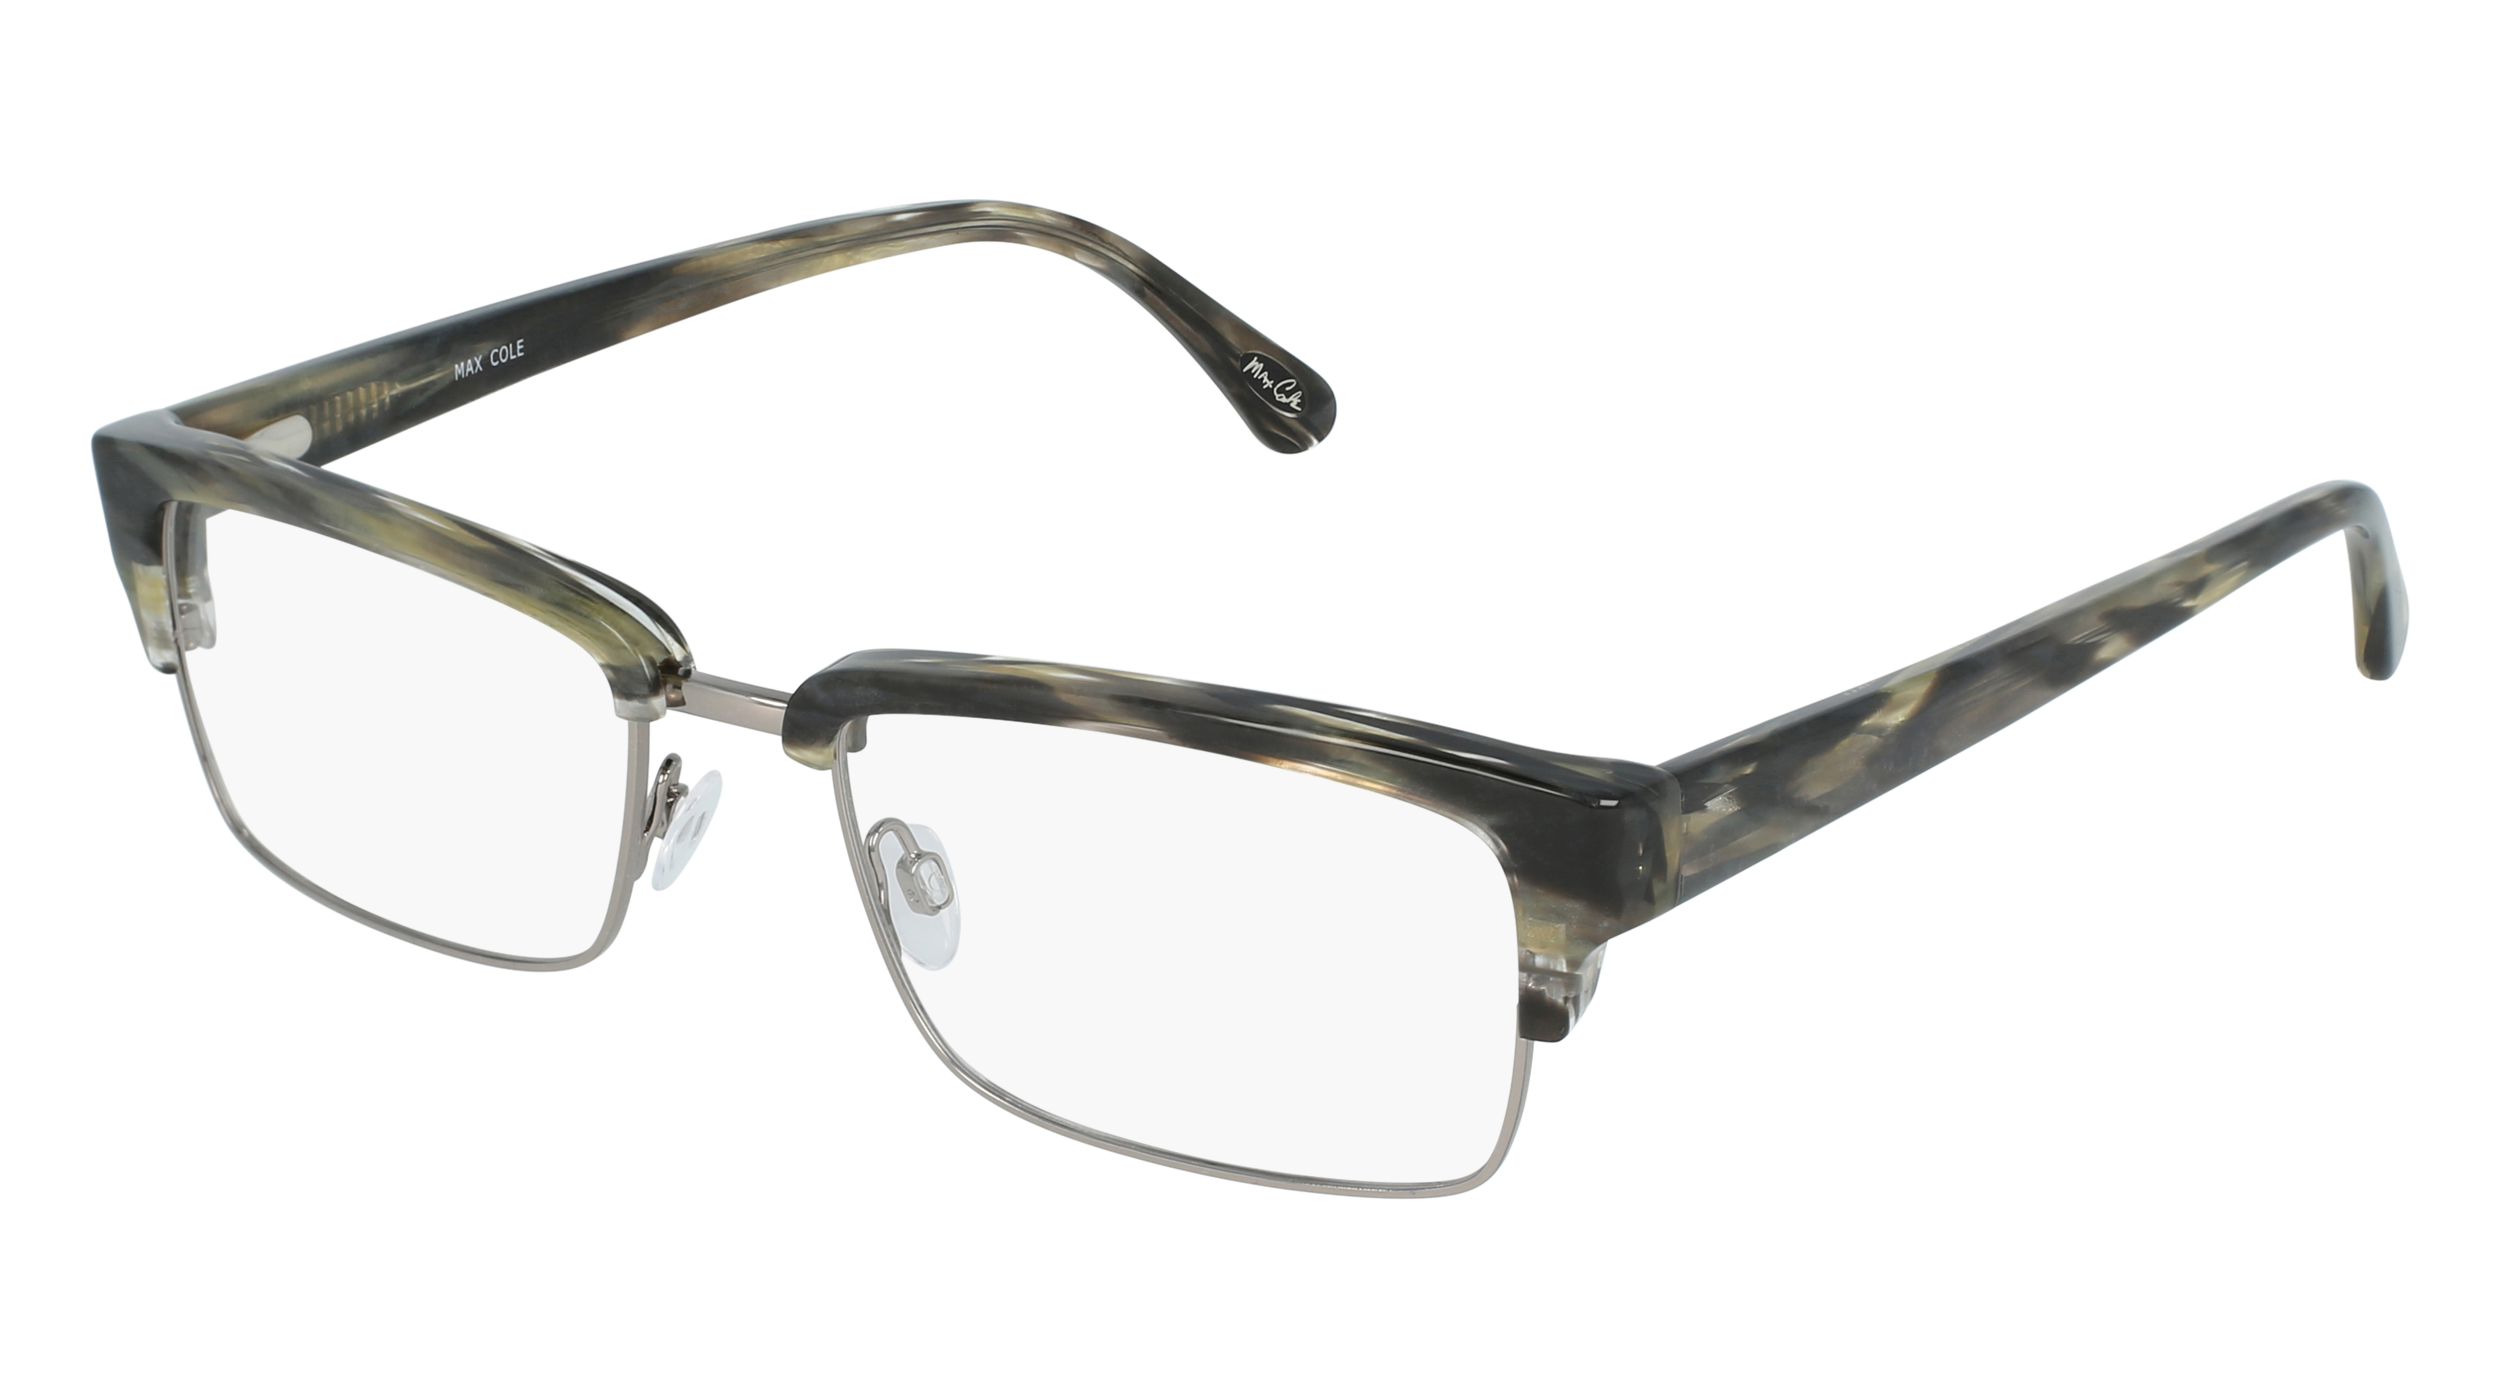 M MC 1504 men's eyeglasses (from the side)